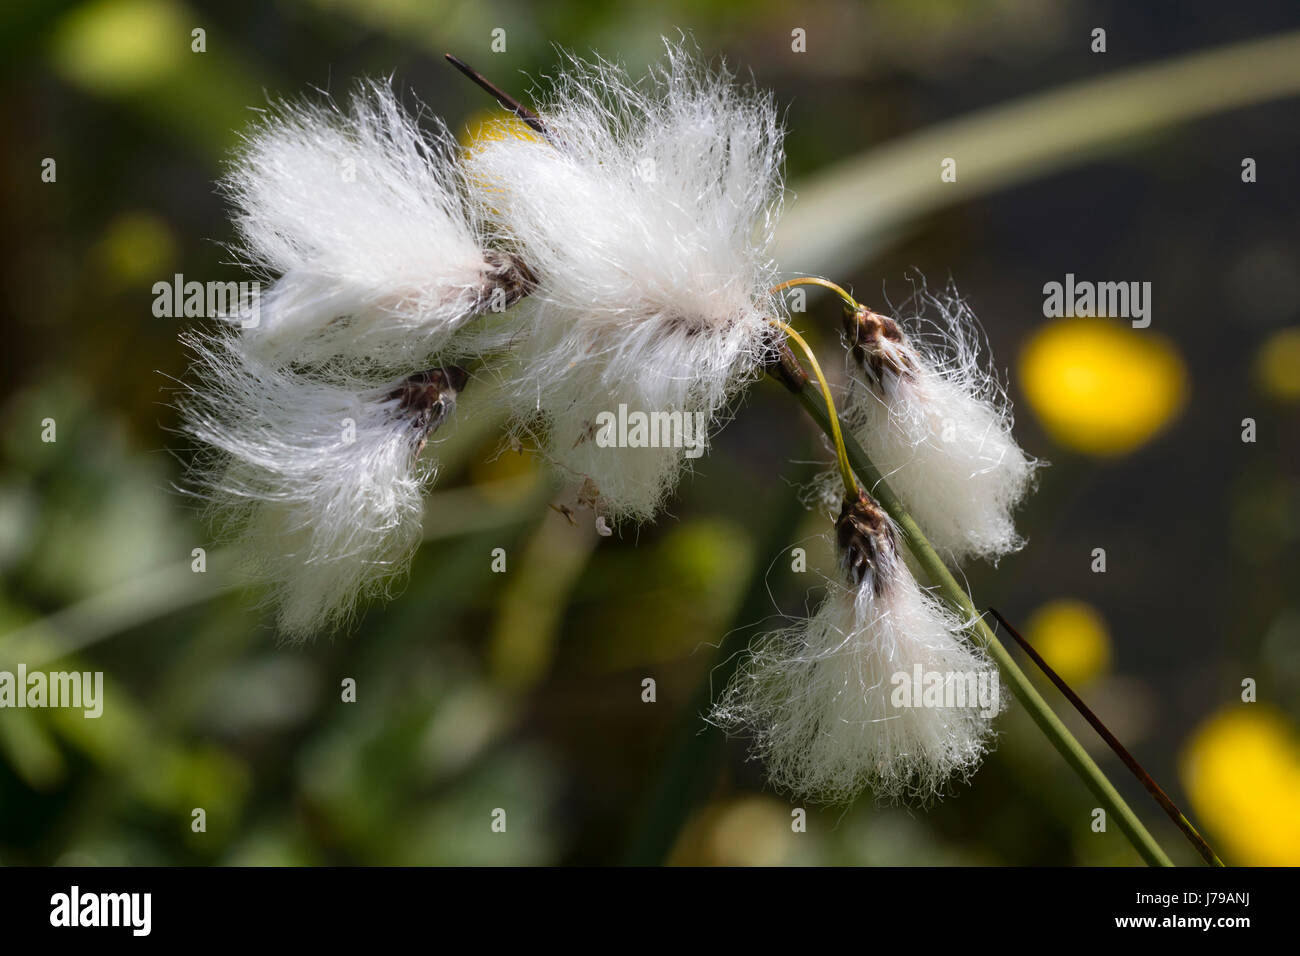 Feathery cabezas de semillas de la planta acuática marginal de pantano Eriophorum angustifolium, pasto de algodón Foto de stock